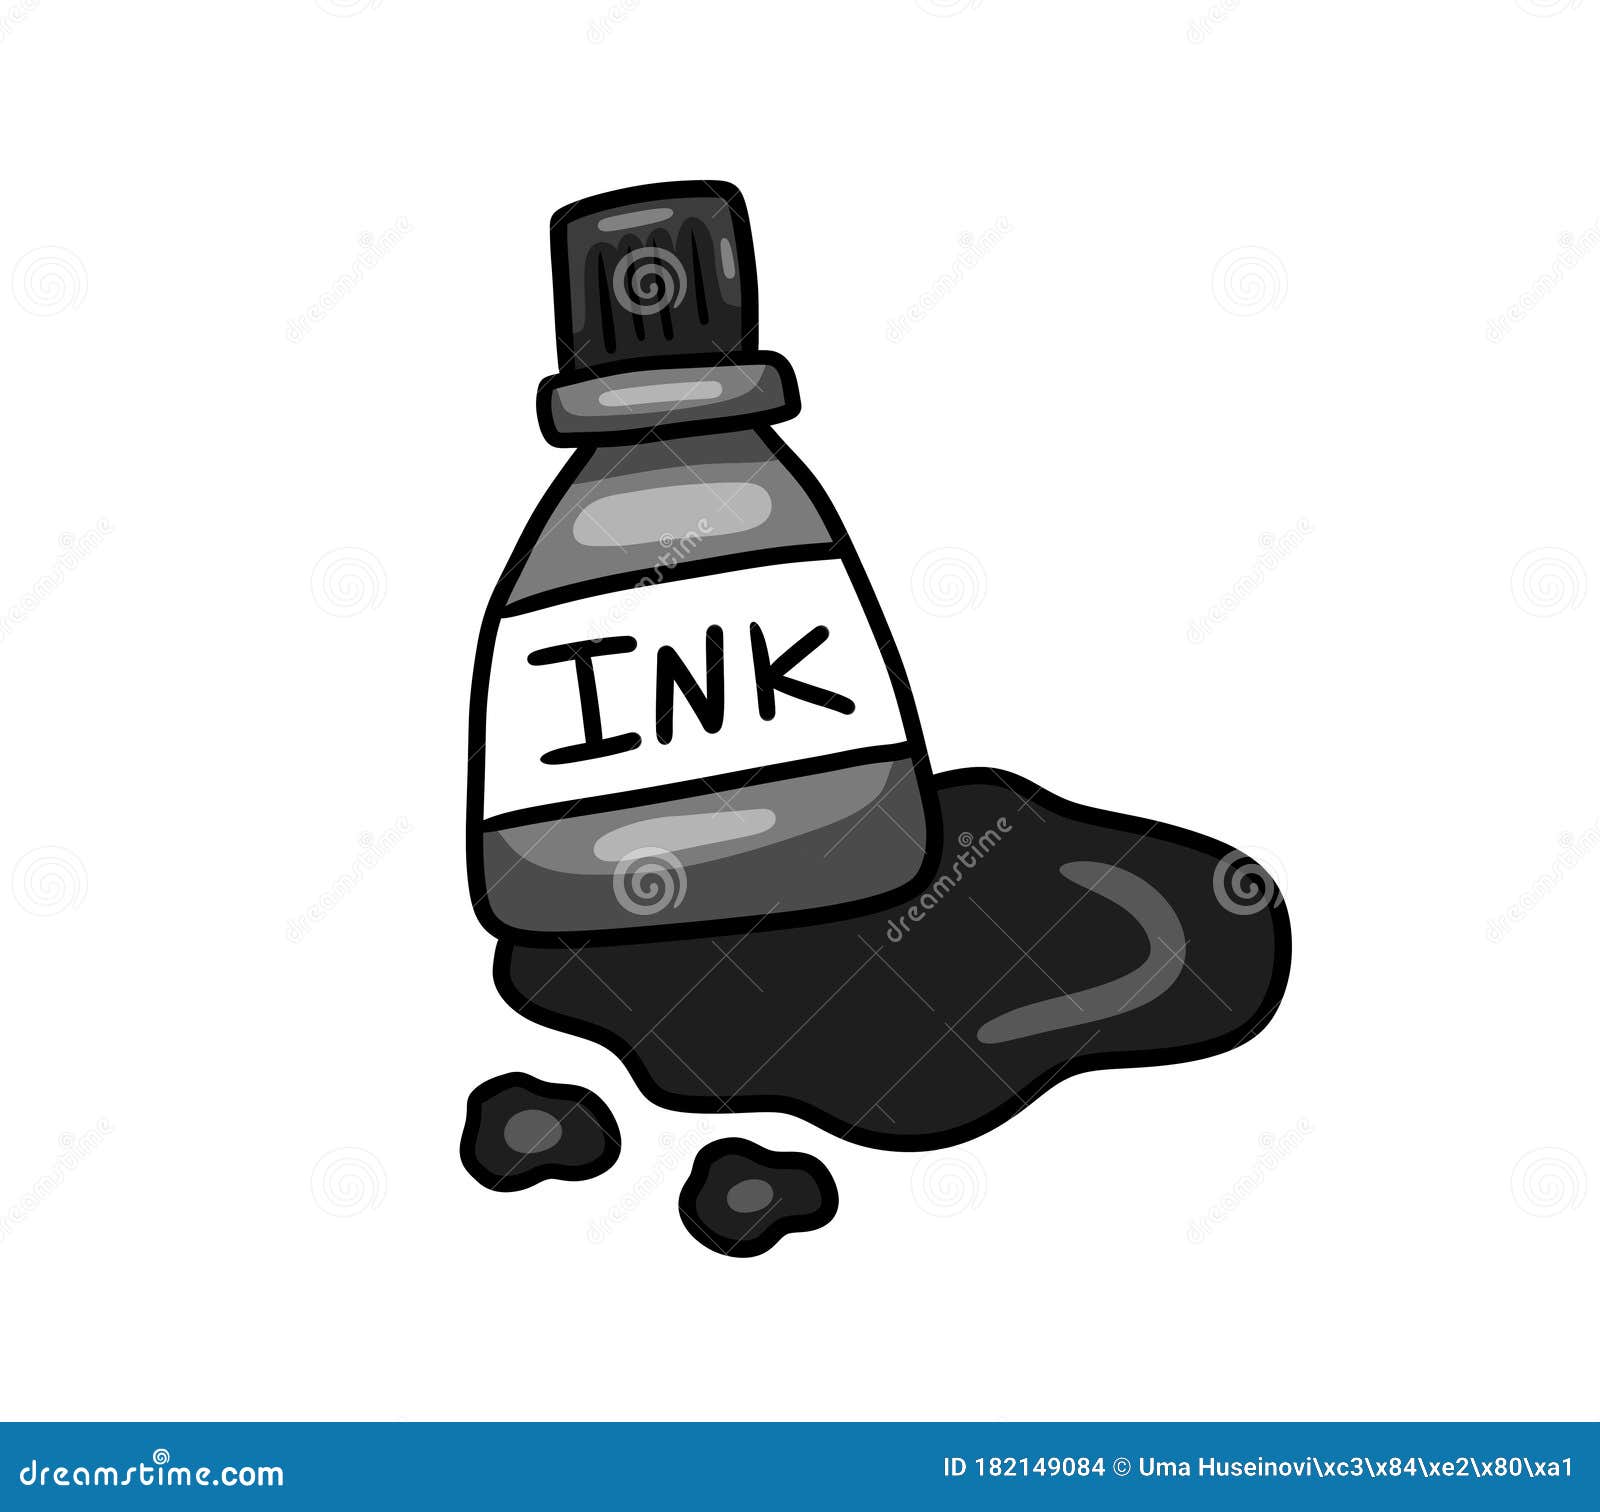 ink bottle cartoon